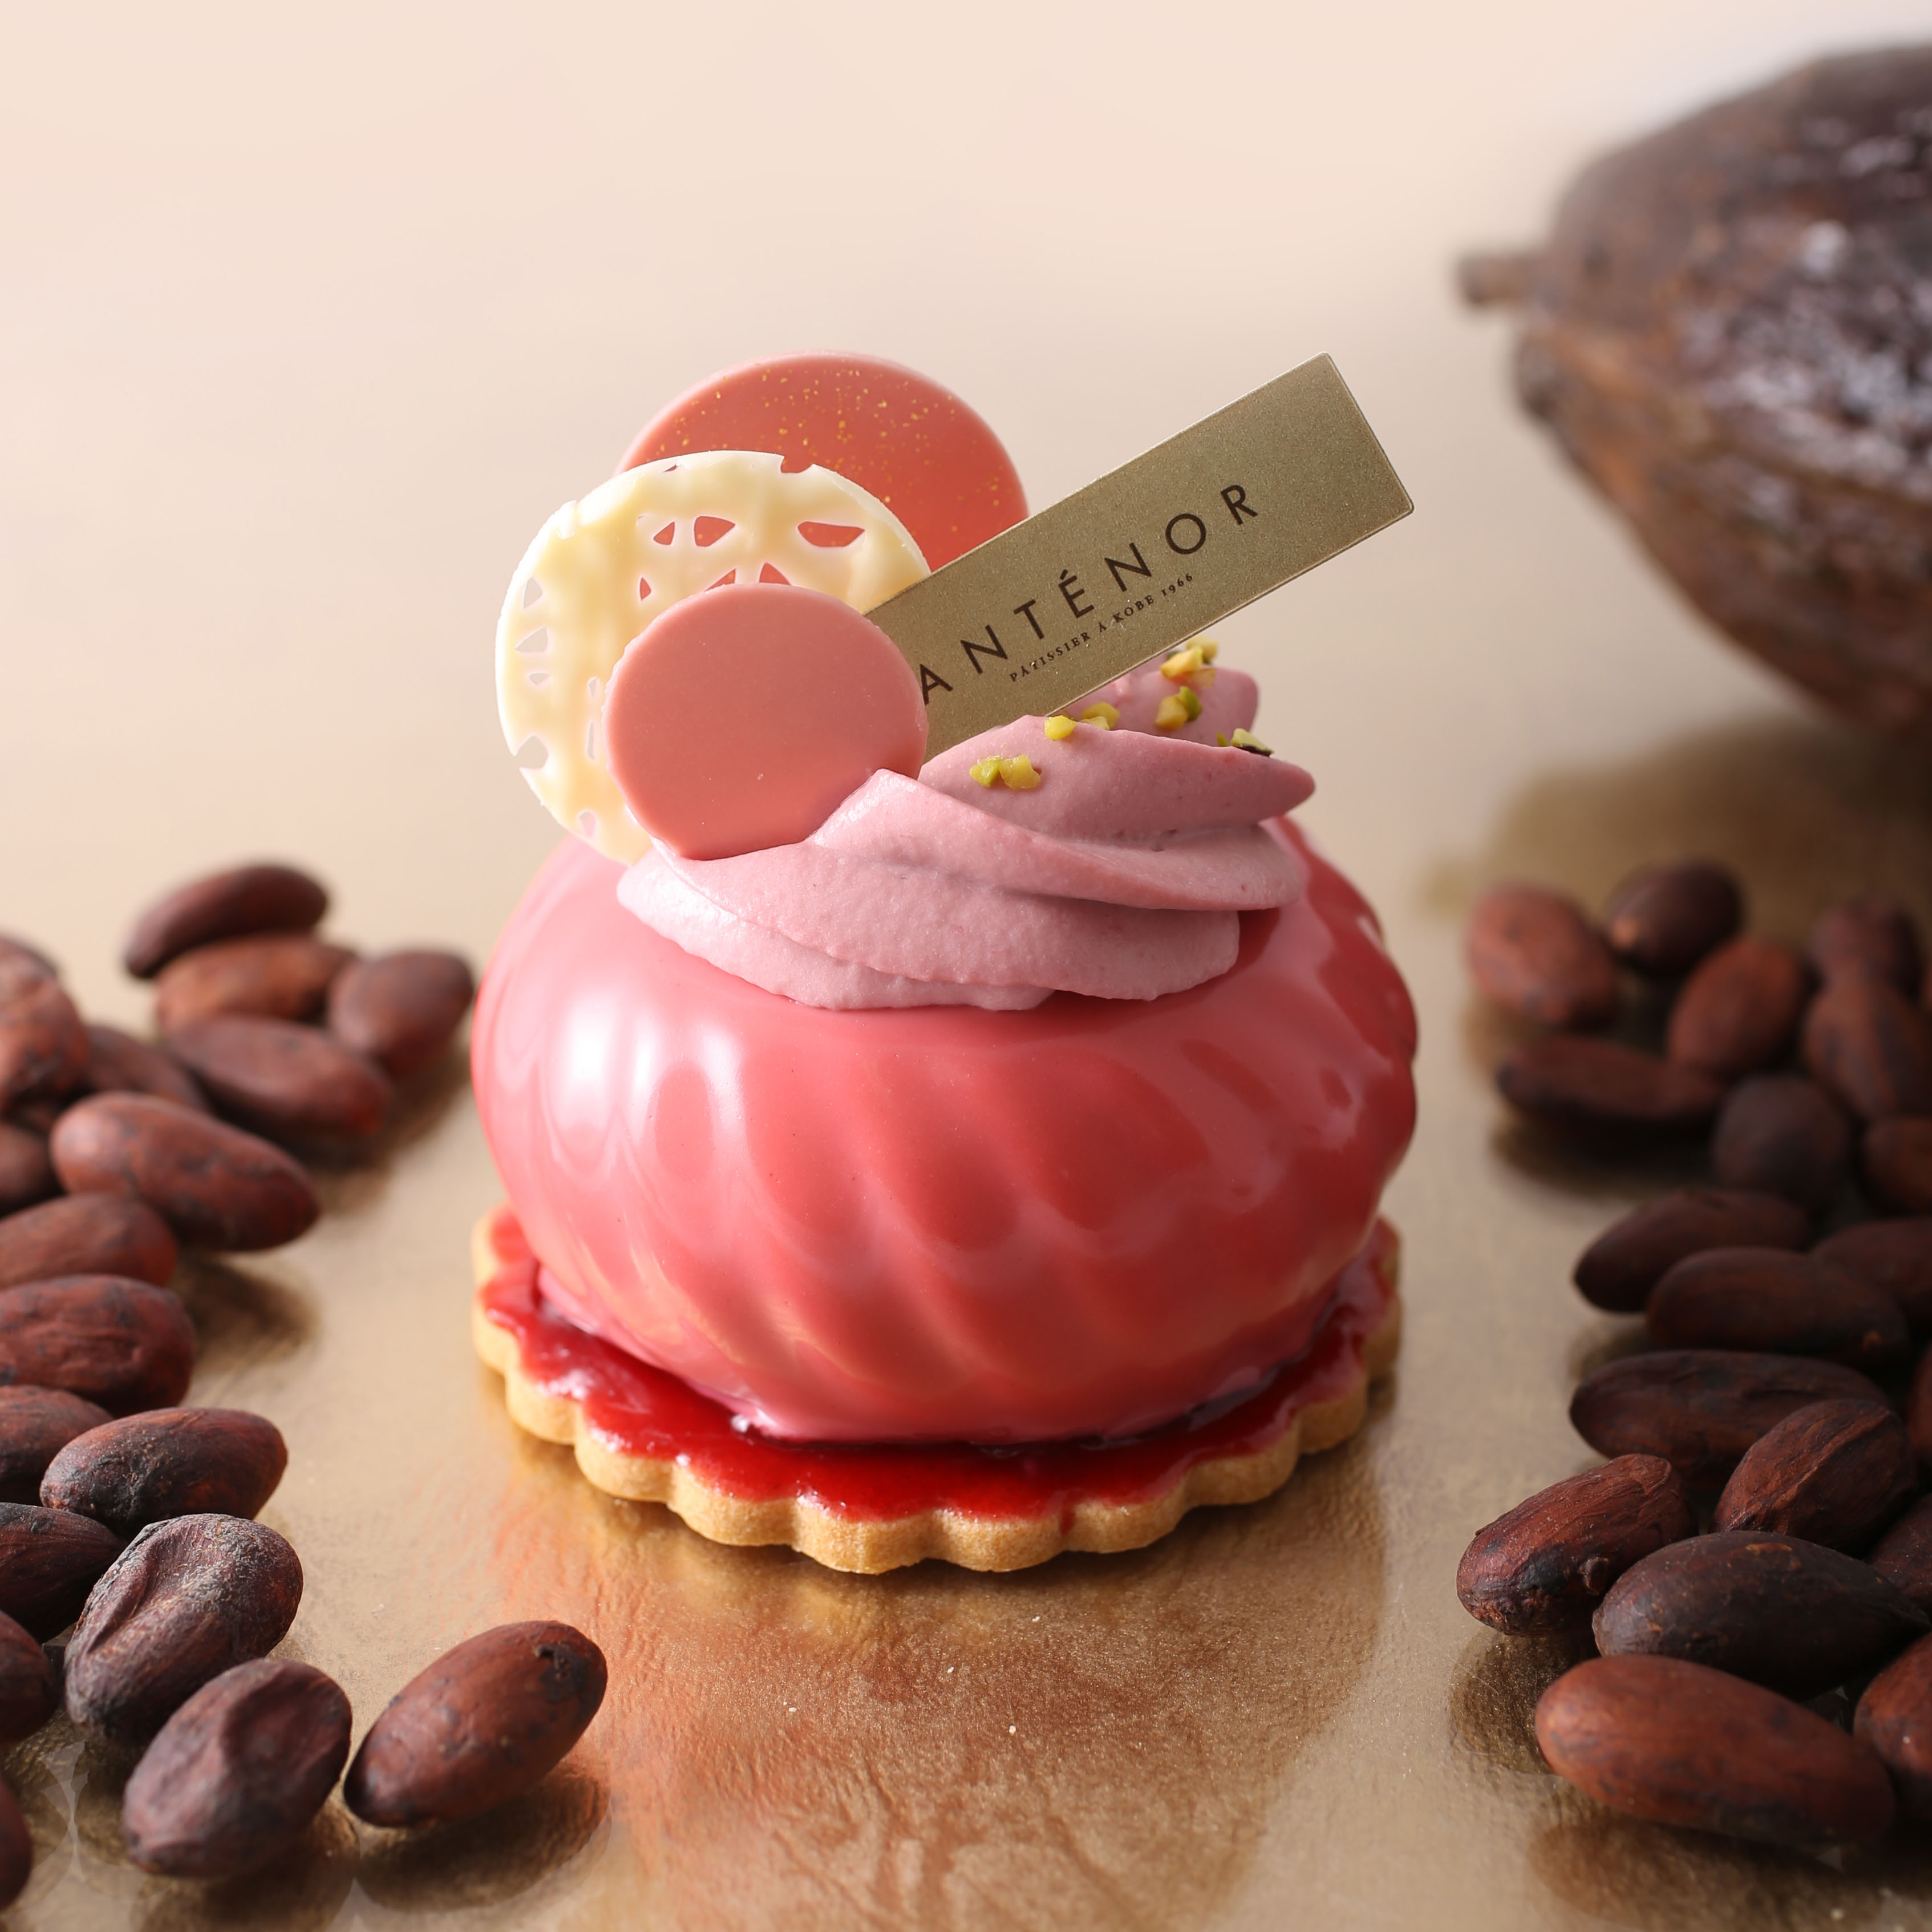 アンテノール 10店舗限定発売 ルビーチョコレート を使ったシェフこだわりのケーキ 株式会社 エーデルワイスのプレスリリース